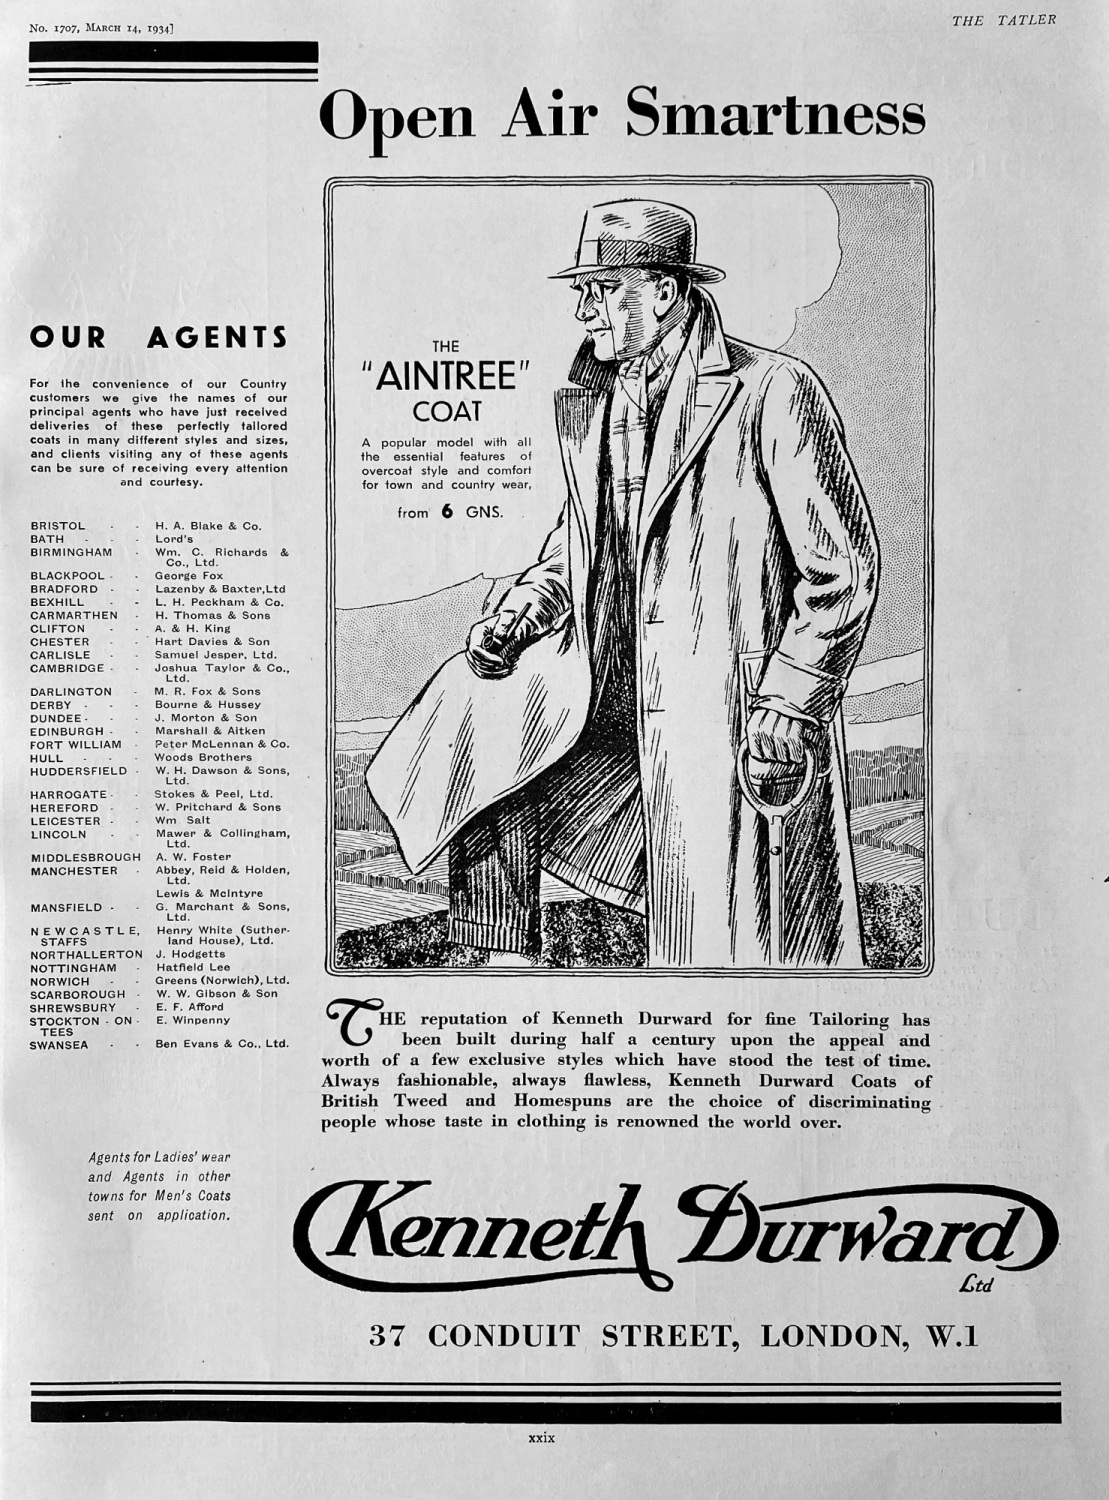 Kenneth Durward Ltd.   (The 